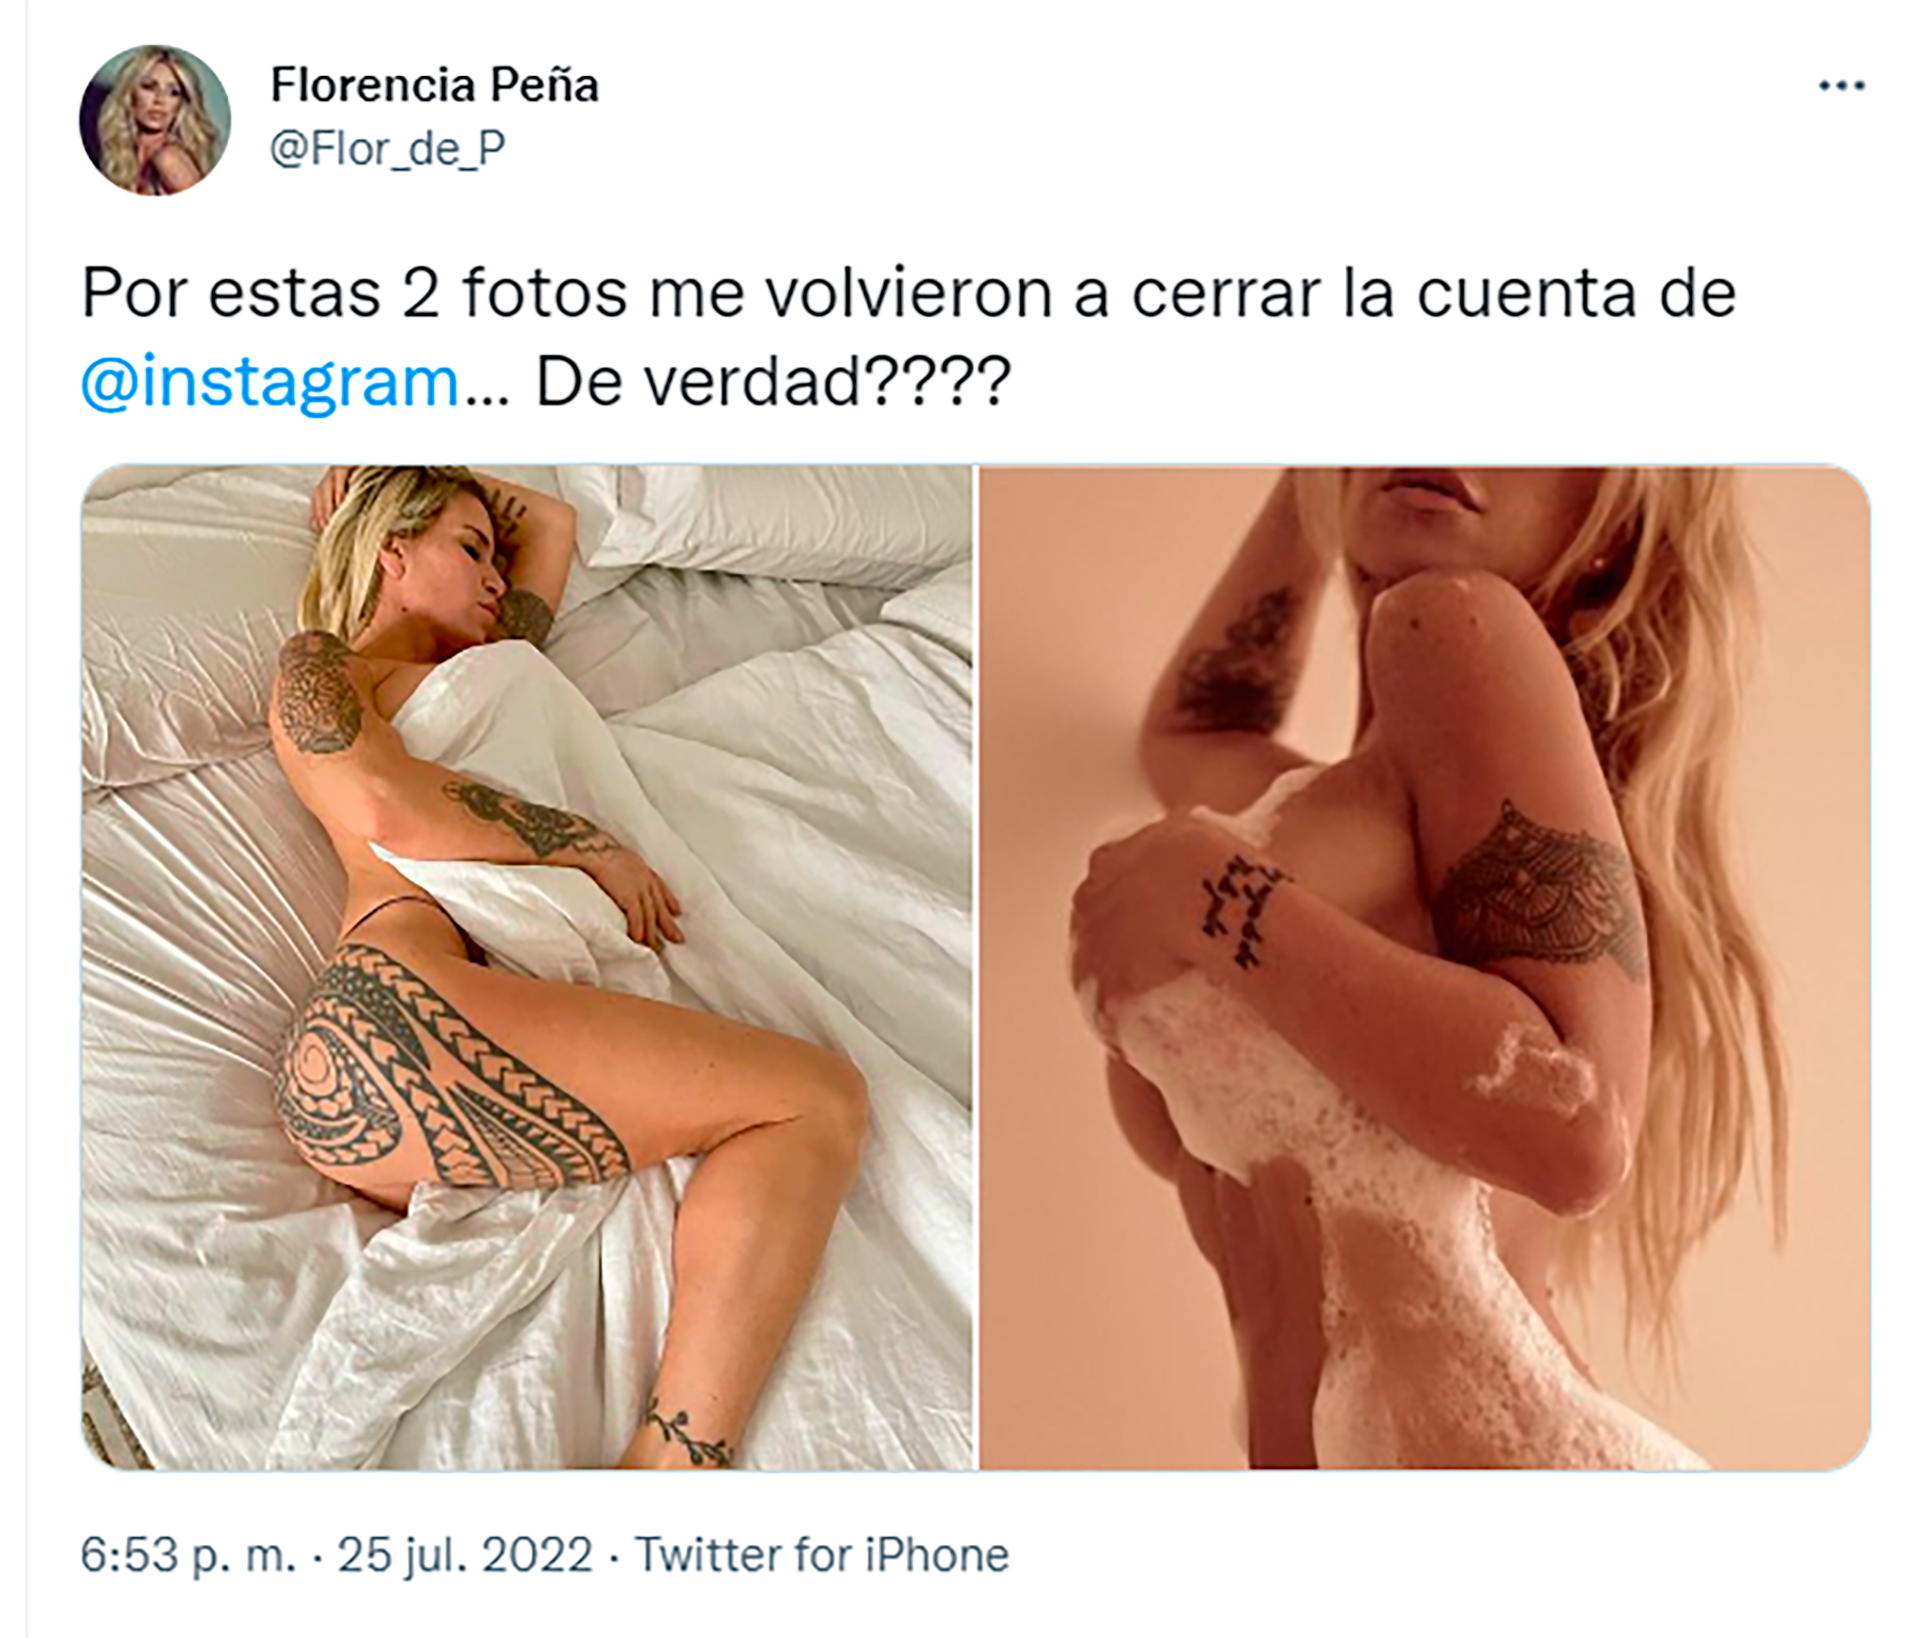 El tweet de Florencia Peña con las fotos por las que fue censurada en Instagram (Foto: Twitter)